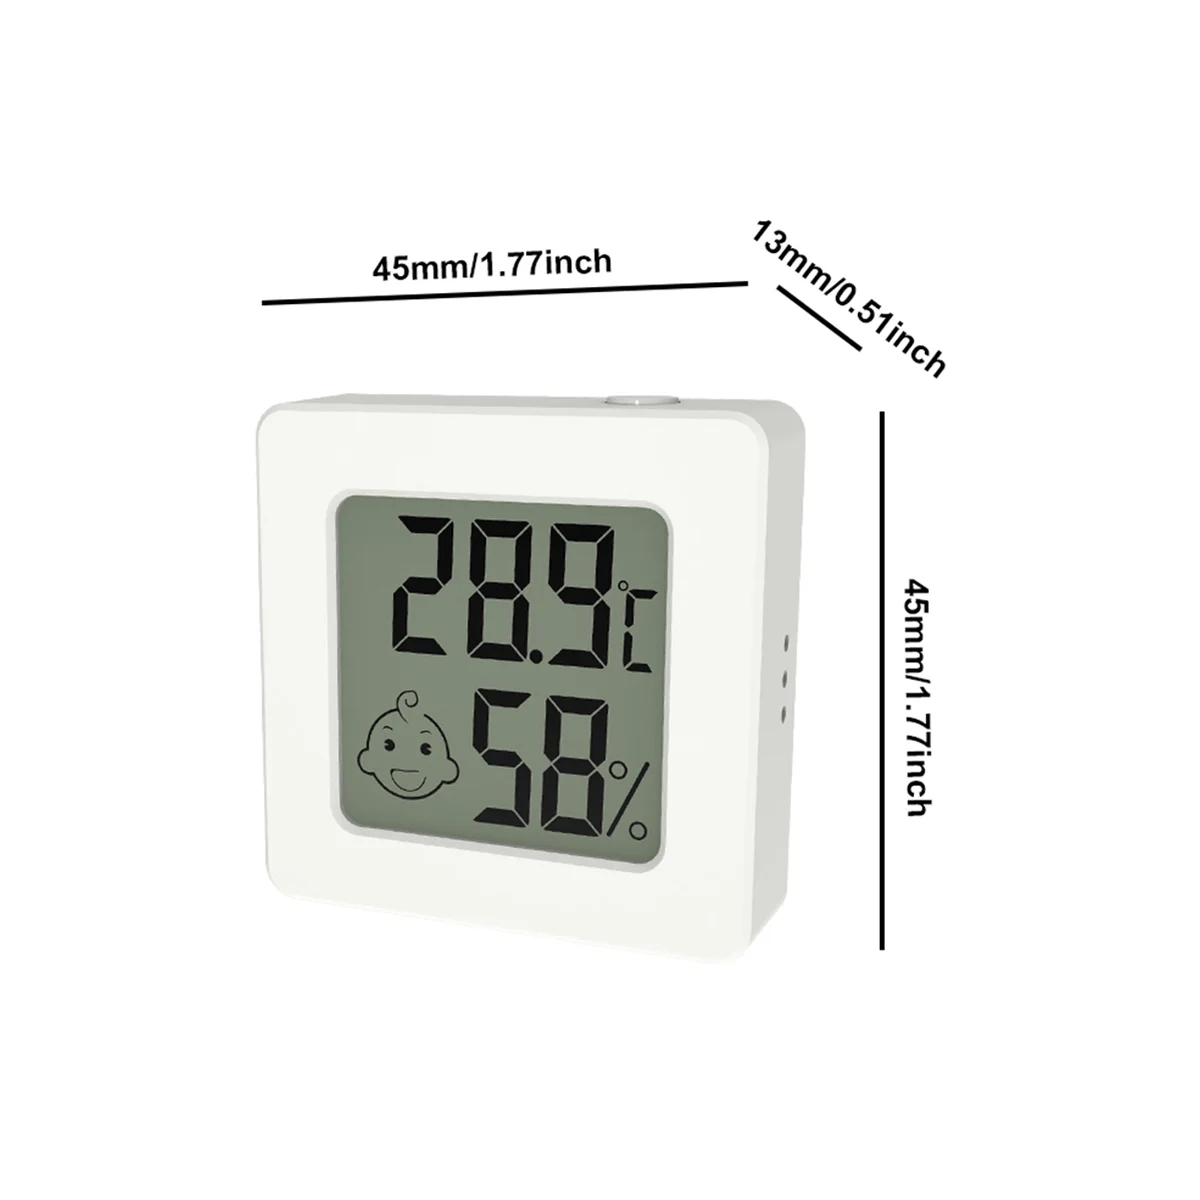 

Цифровая метеостанция, Мини термометр-гигрометр с ЖК дисплеем и кнопкой, измеритель температуры и влажности, белый цвет